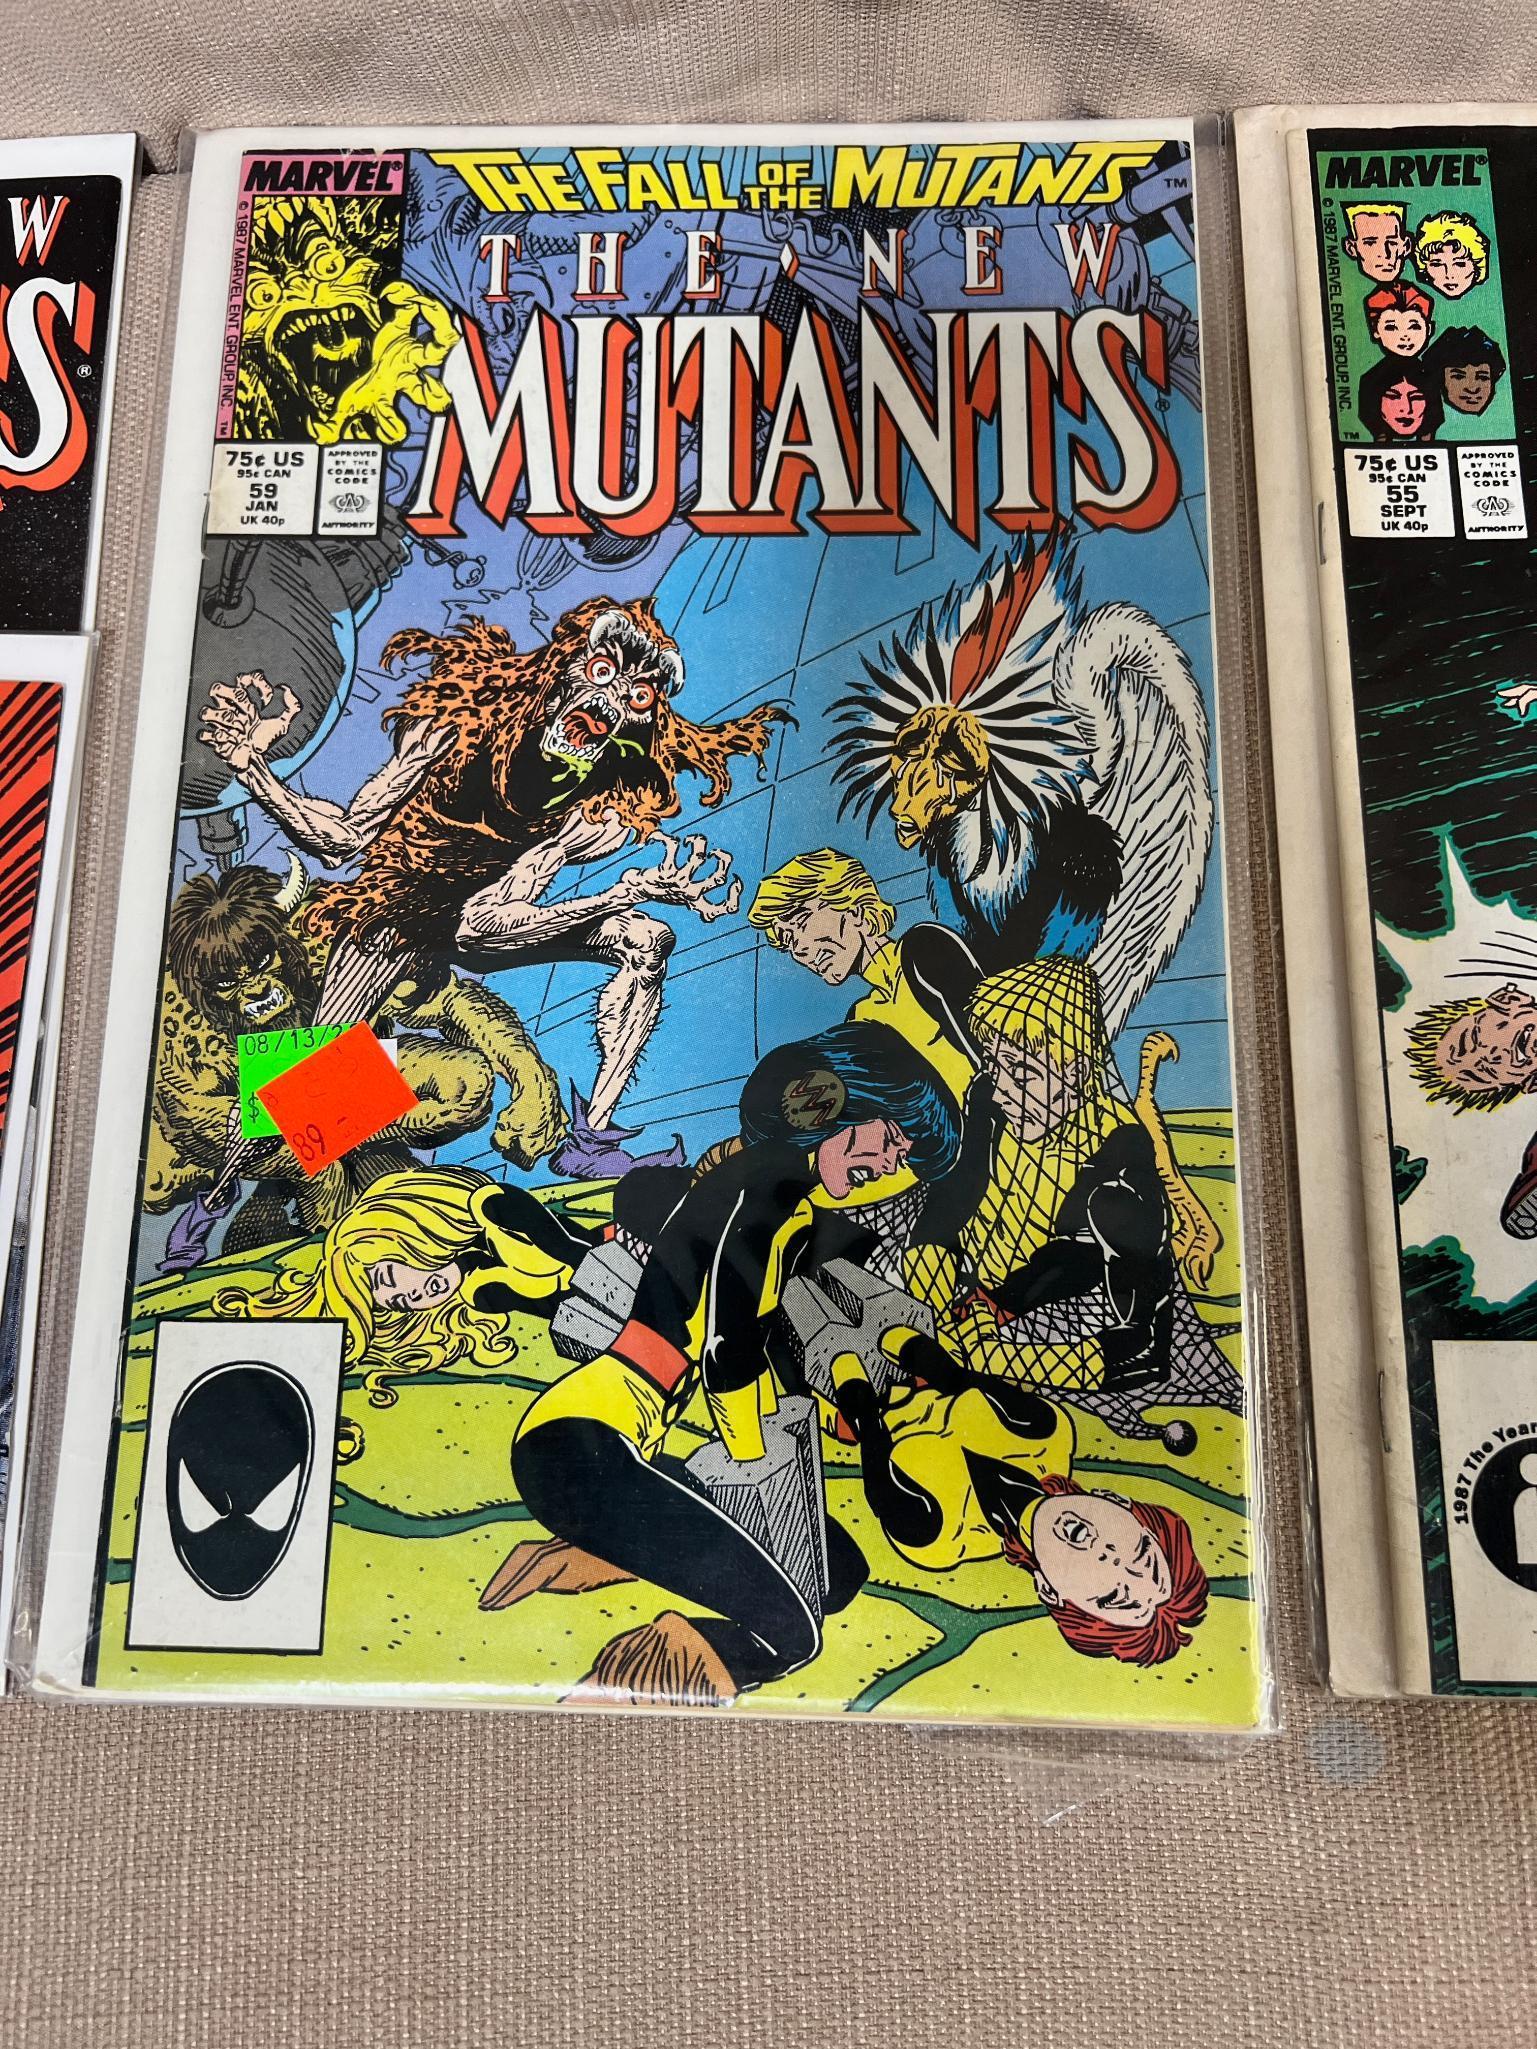 15- The New Mutants Comic Books, issues 51-65